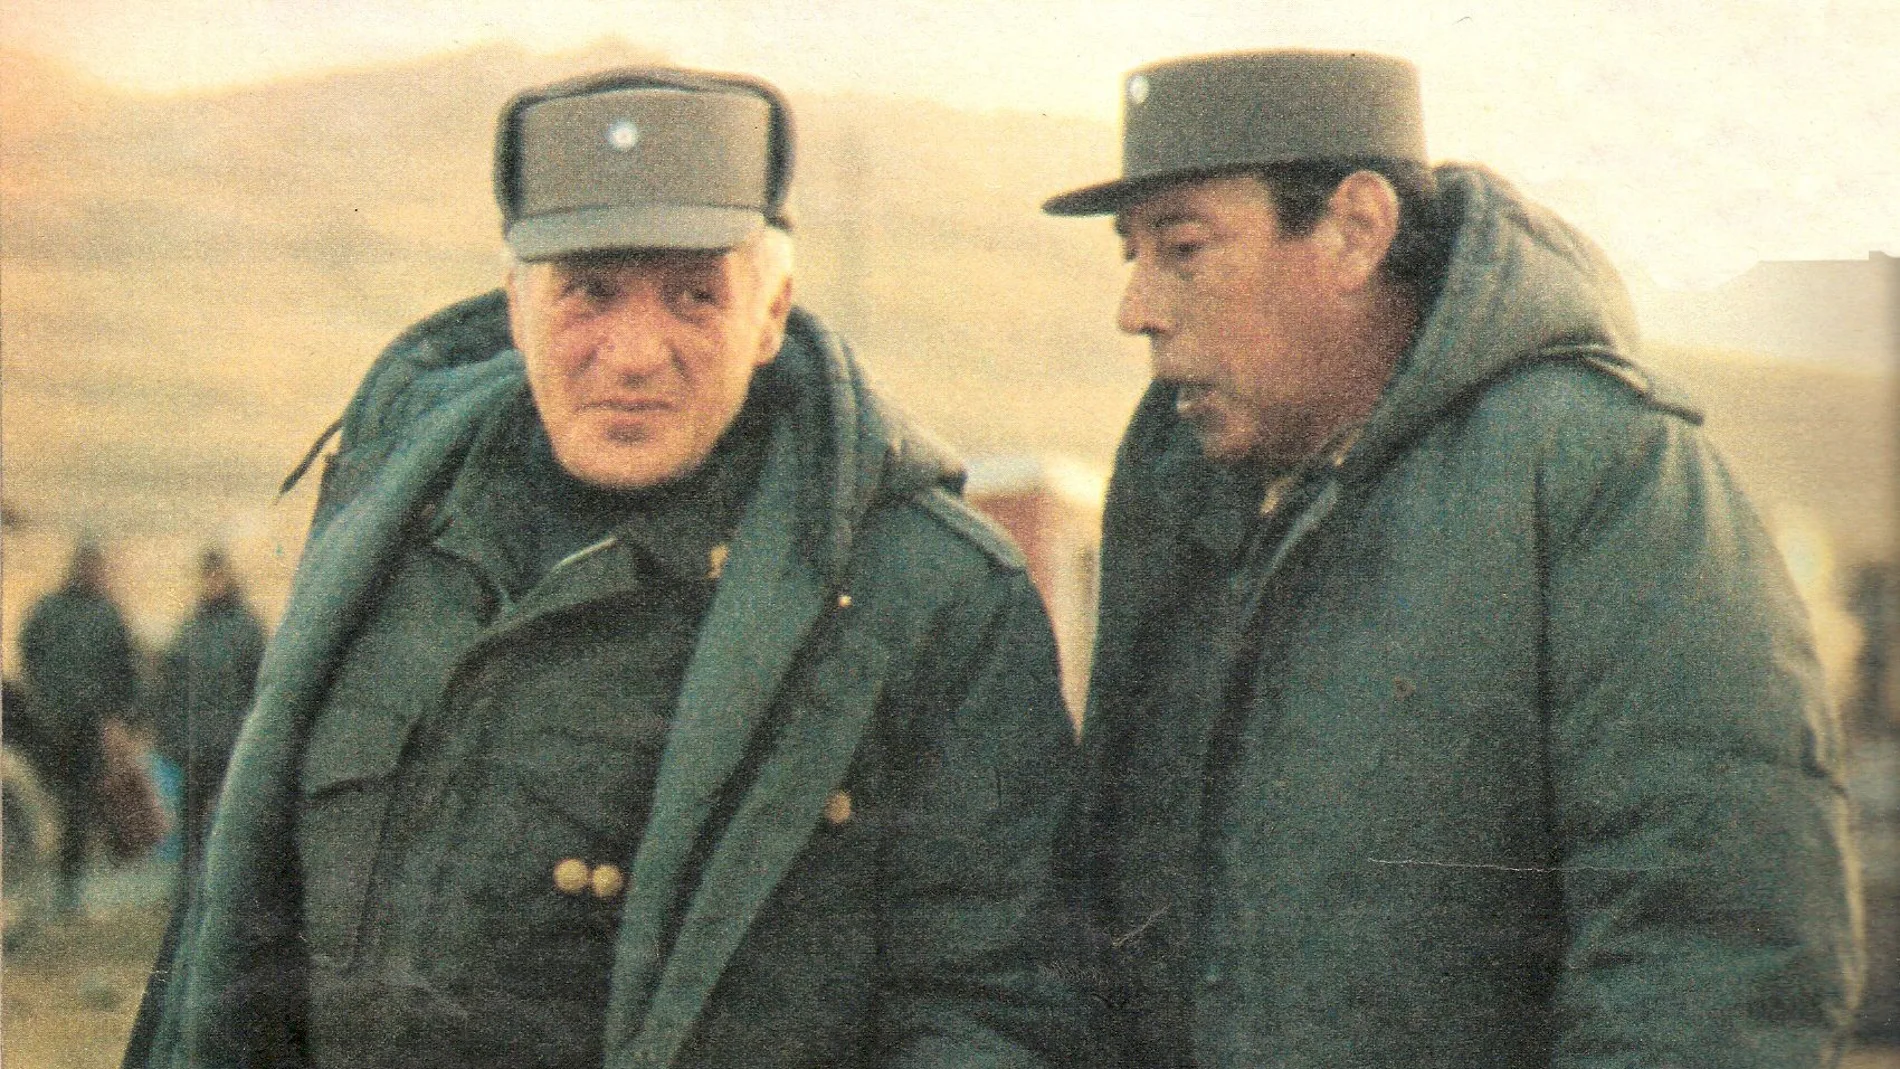 El general Leopoldo Fortunato Galtieri (a la izquierda), junto al general Jofre (derecha), comandante en jefe de la defensa de las Malvinas, durante la visita del primero a las islas